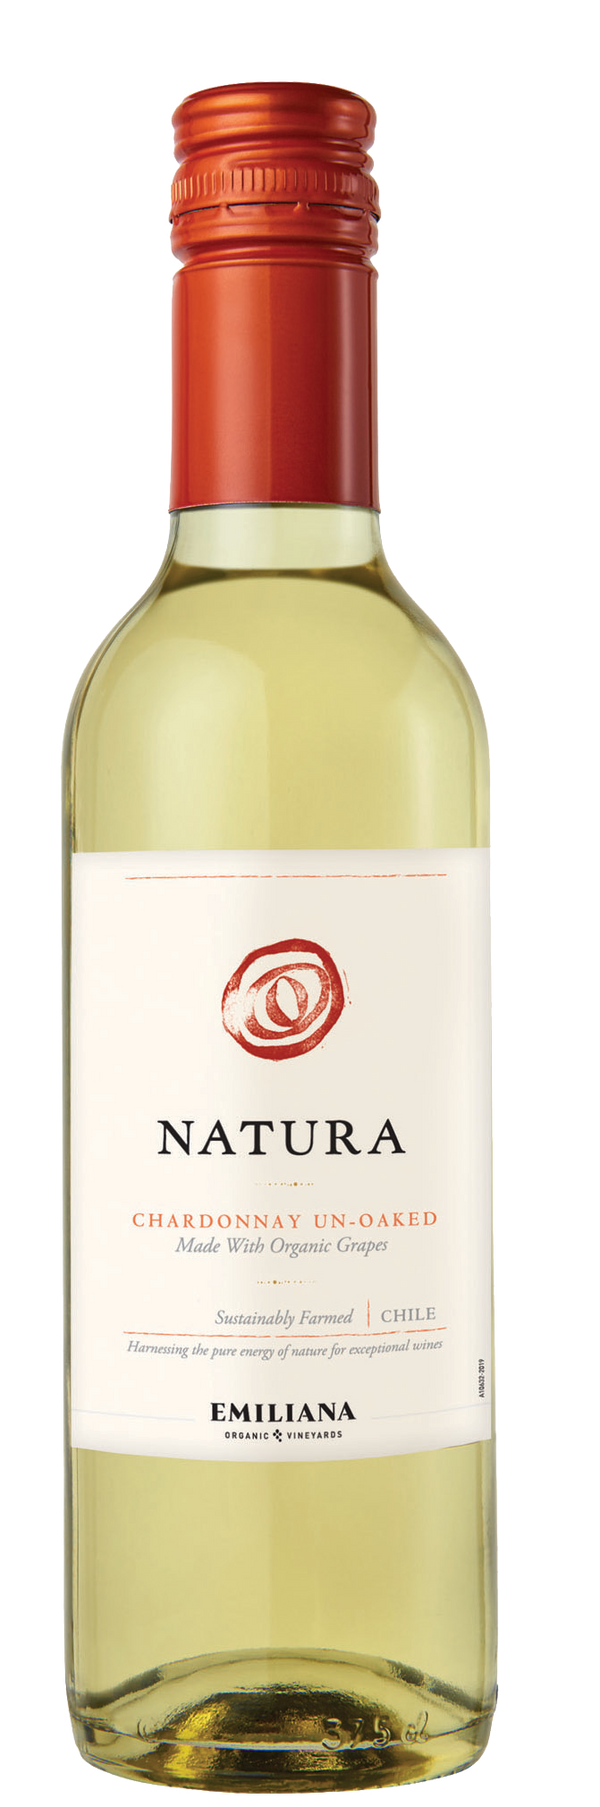 Natura Chardonnay Un-Oaked 2020 375ml